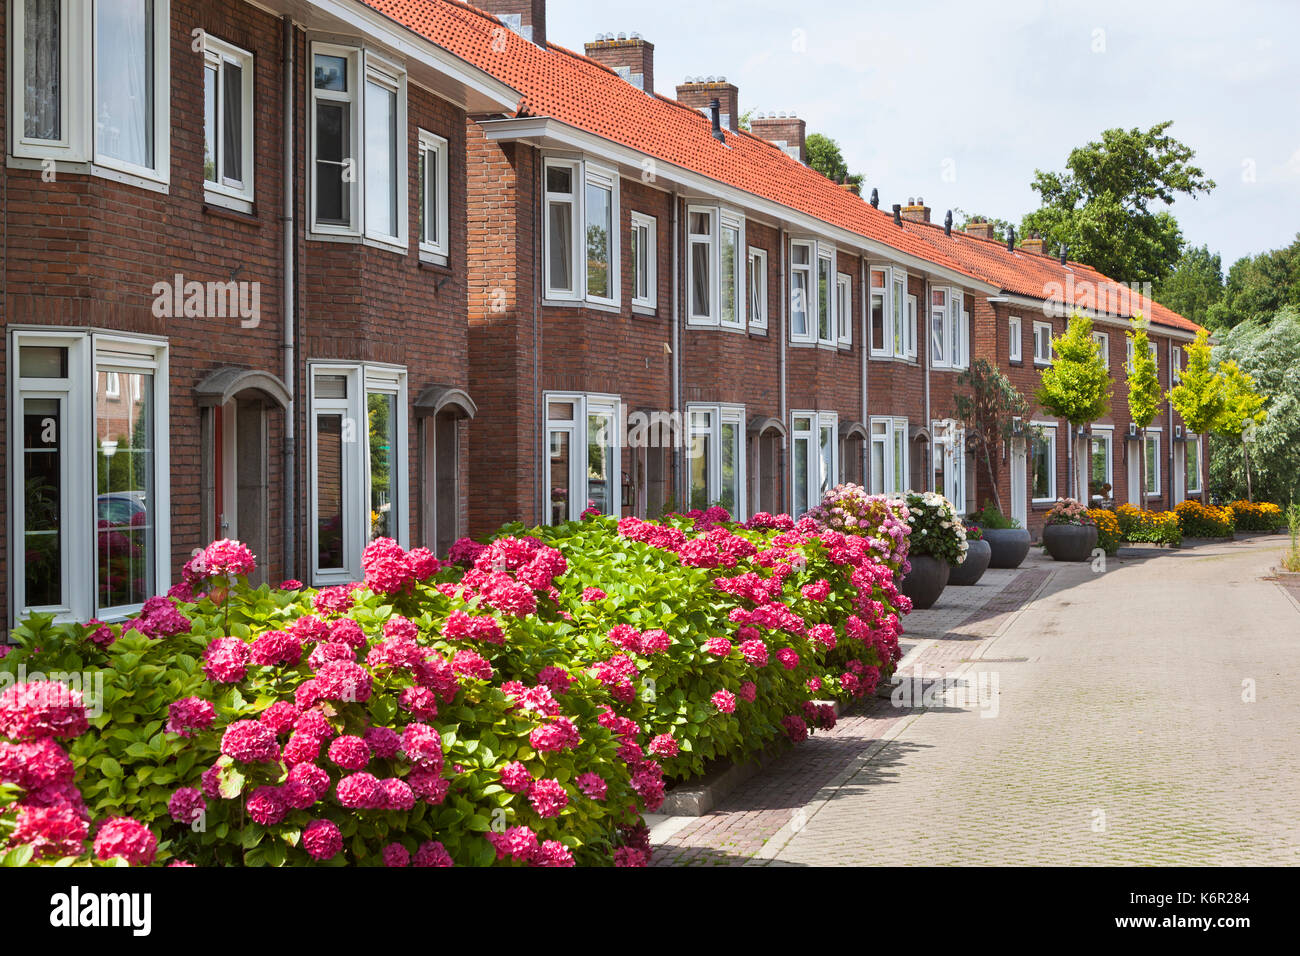 Si trova in un bel quartiere in Capelle aan den IIssel nei Paesi Bassi con fiori in strada Foto Stock